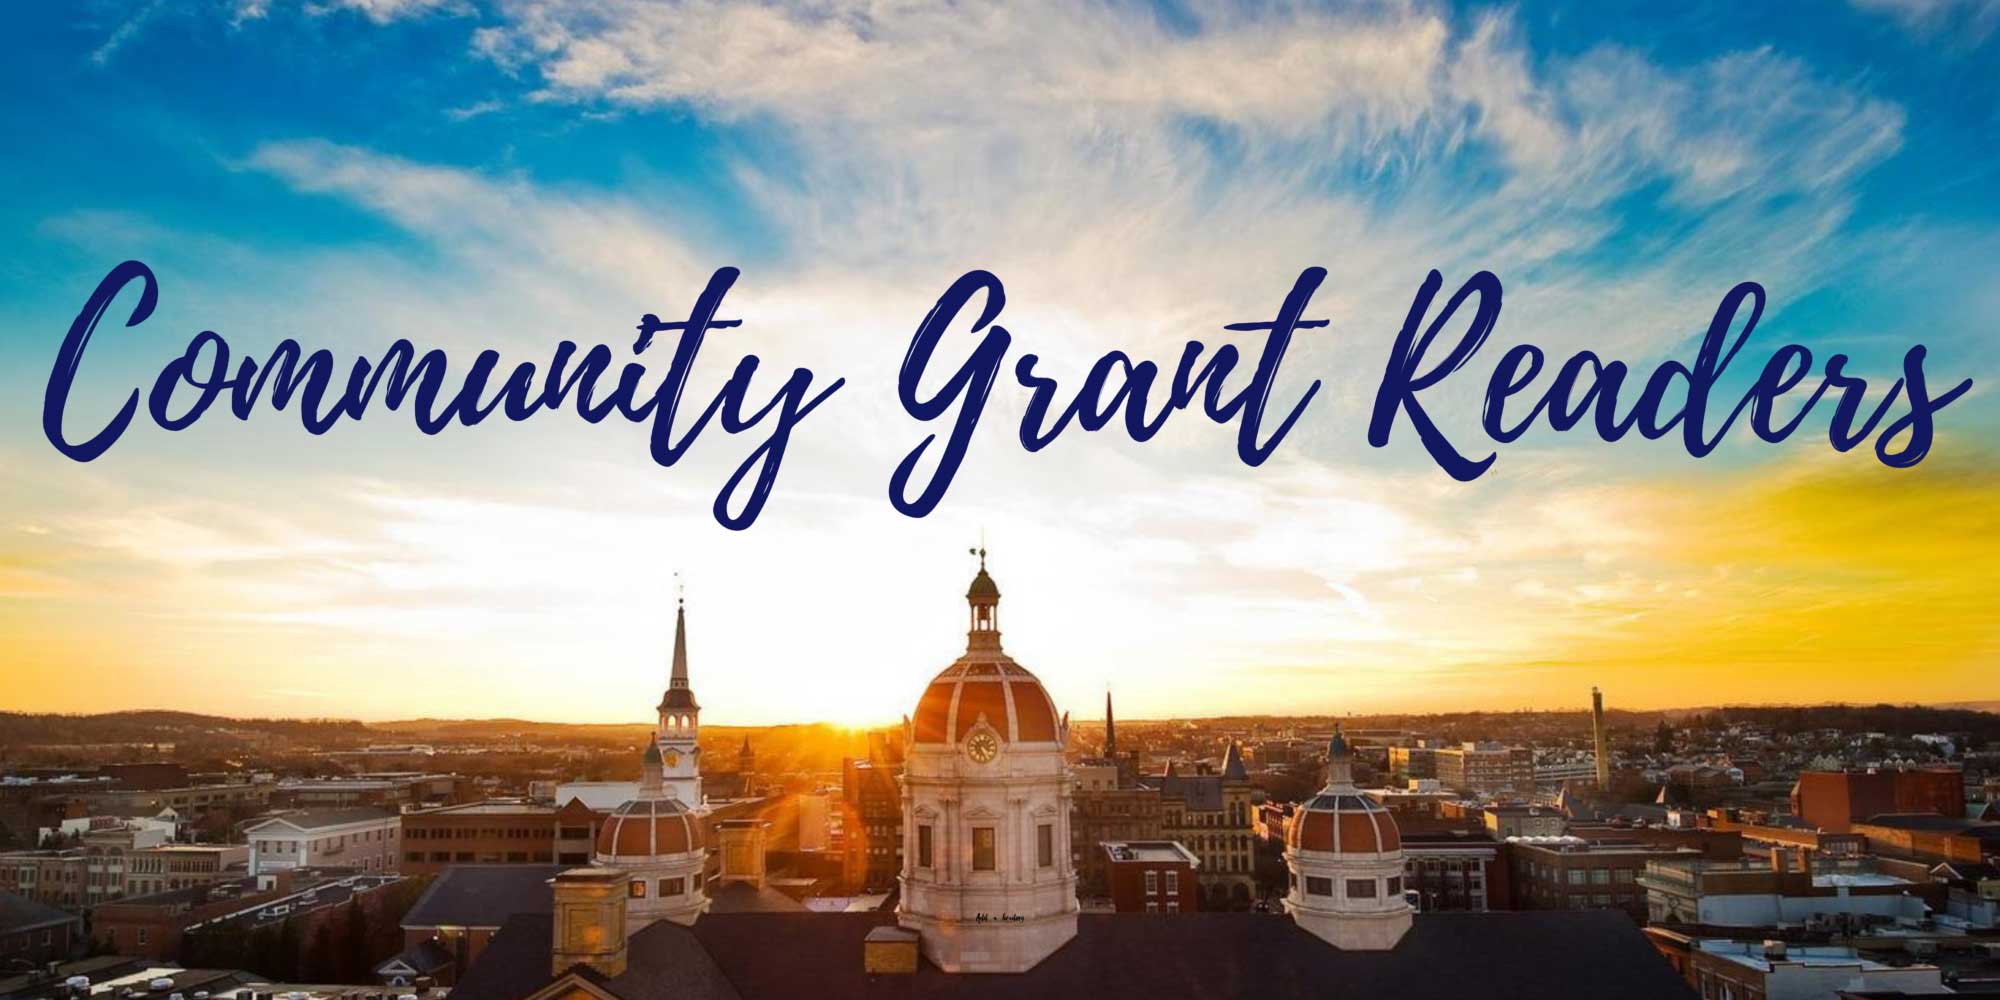 Community Grant Reader: Chris Velez